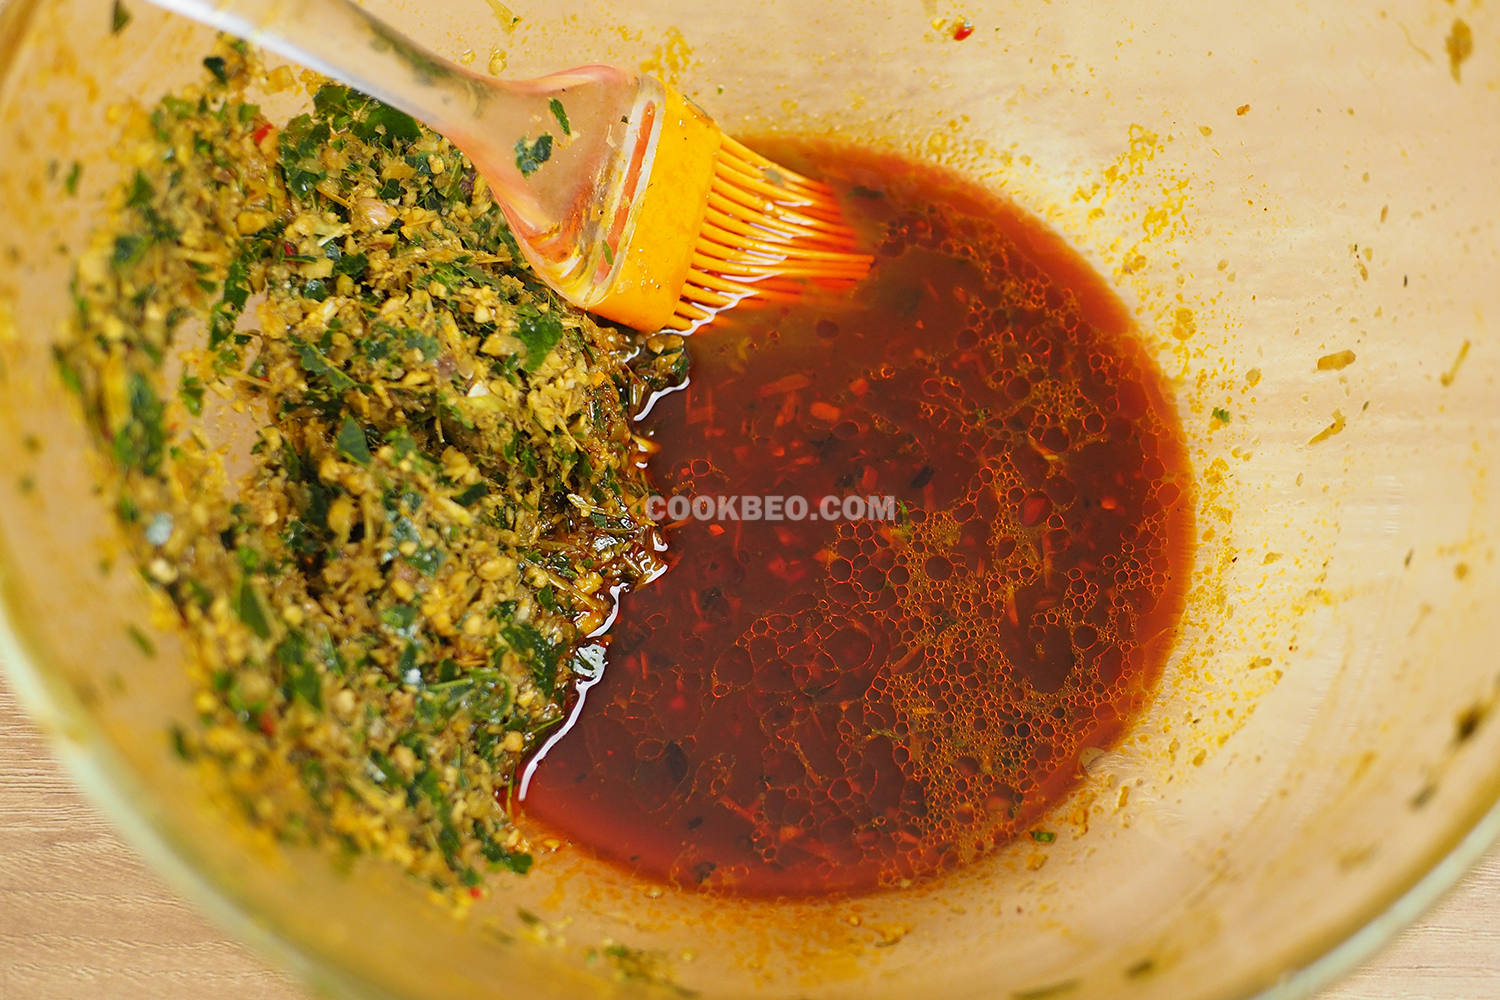 Pha thêm dầu hào, mật ong và dầu màu điều để phết lên vịt ở lần nướng cuối cùng cho vịt bật màu